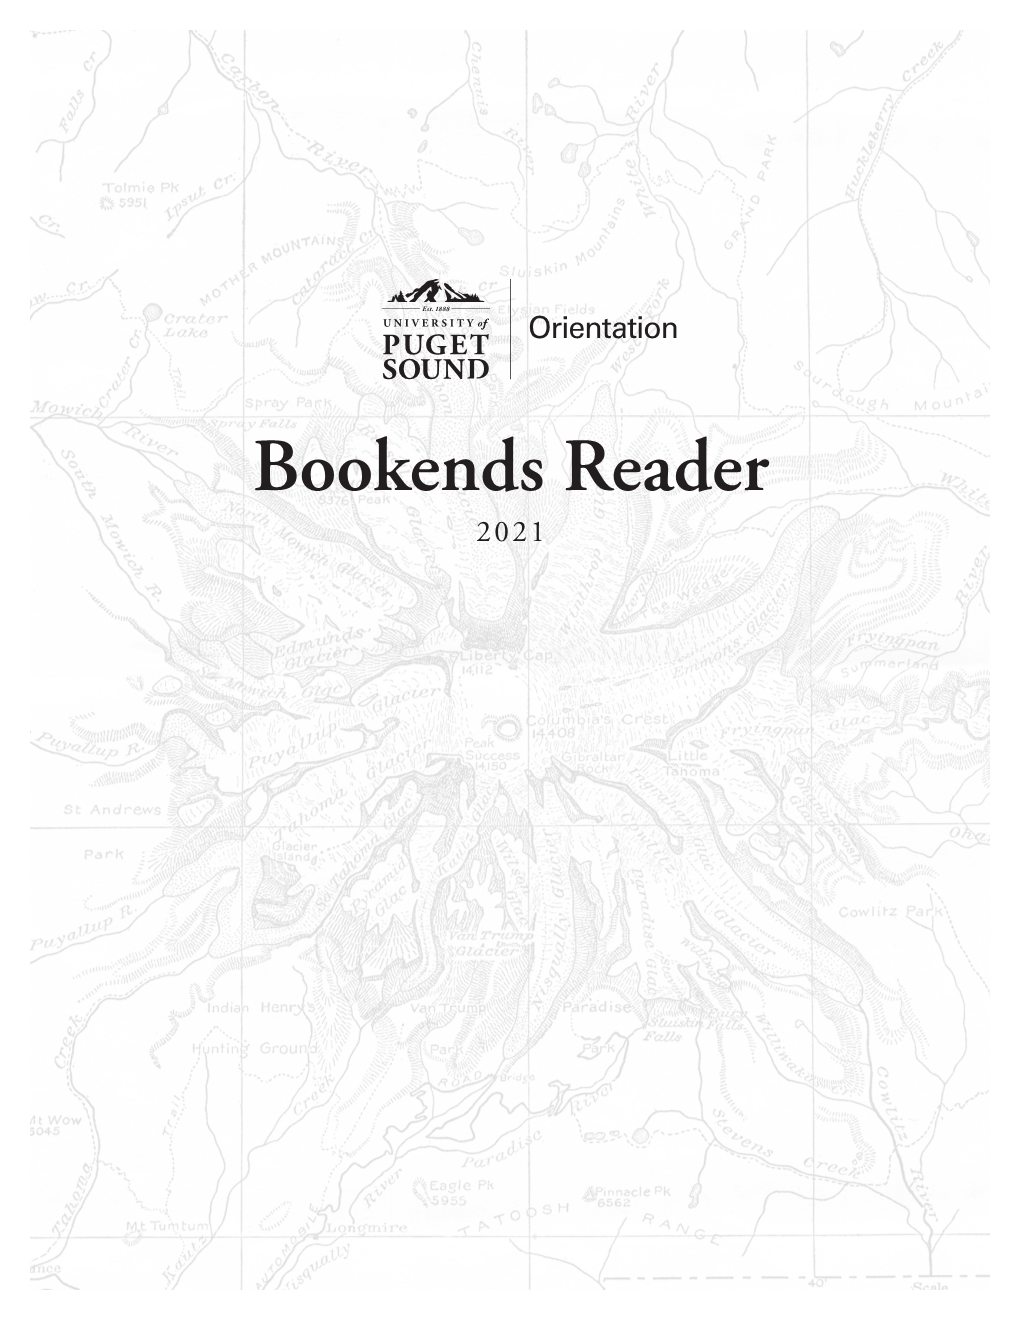 Bookends Reader 2021 Bookends Reader